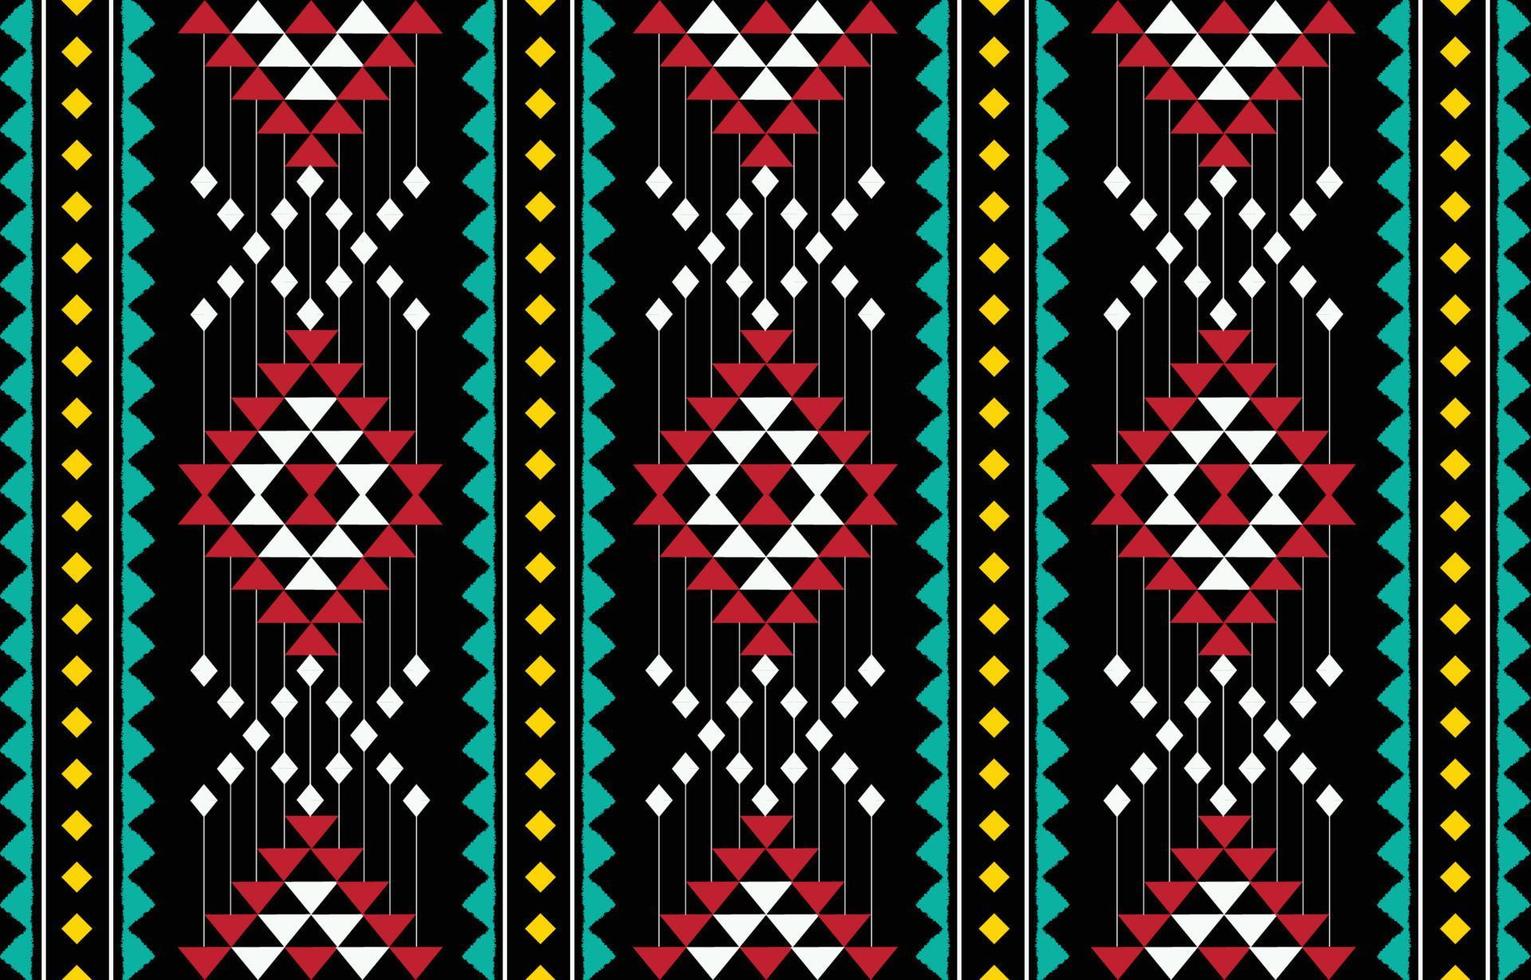 ethnischer geometrischer Mustervektor. einheimisches afroamerikanisches mexikanisches indonesisches aztekenmotiv und böhmische musterelemente. entworfen für hintergrund, tapete, druck, verpackung, fliesen, batik.vektor aztekenmotiv vektor